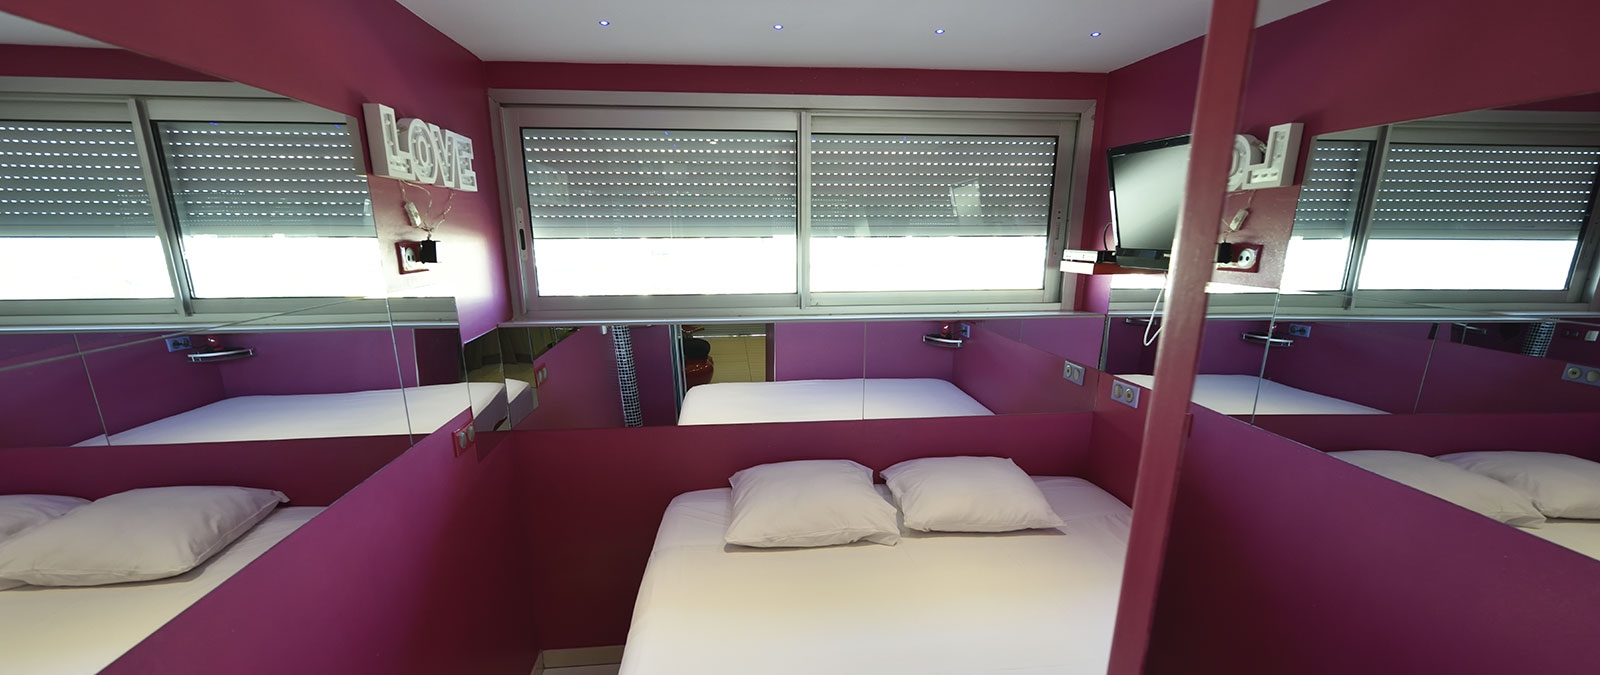 Schlafzimmer mit 180 cm breitem Doppelbett Mietwohnung FKK-Studio Amour Fou